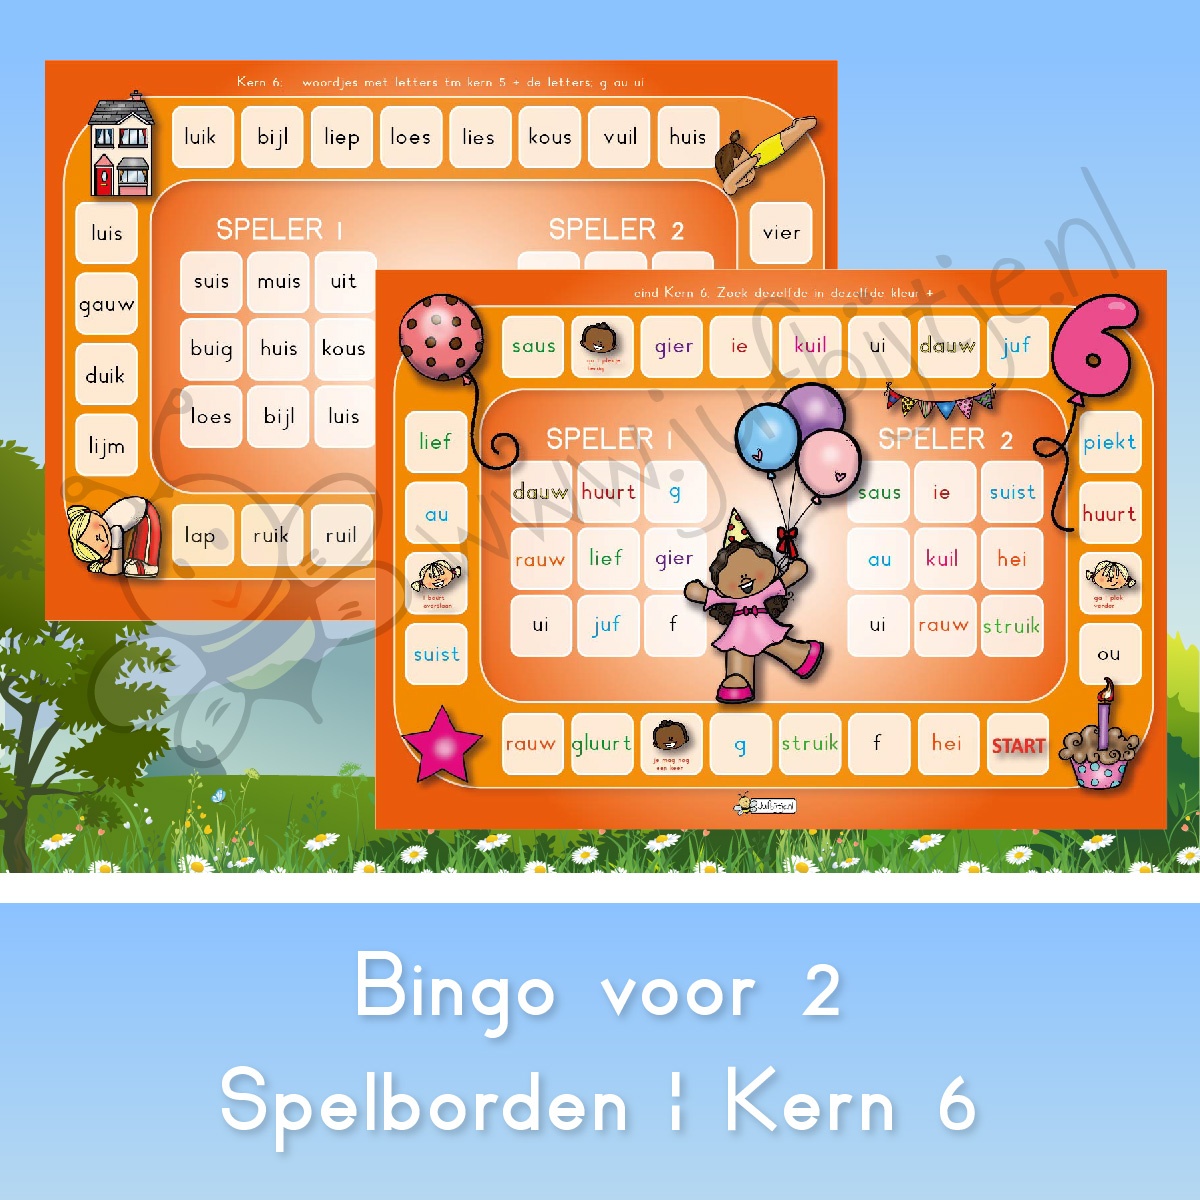 afvoer Kosciuszko Vergoeding Bingospelbord bingo voor twee; Lezen met kernen : kern 6 - jufbijtje.nl